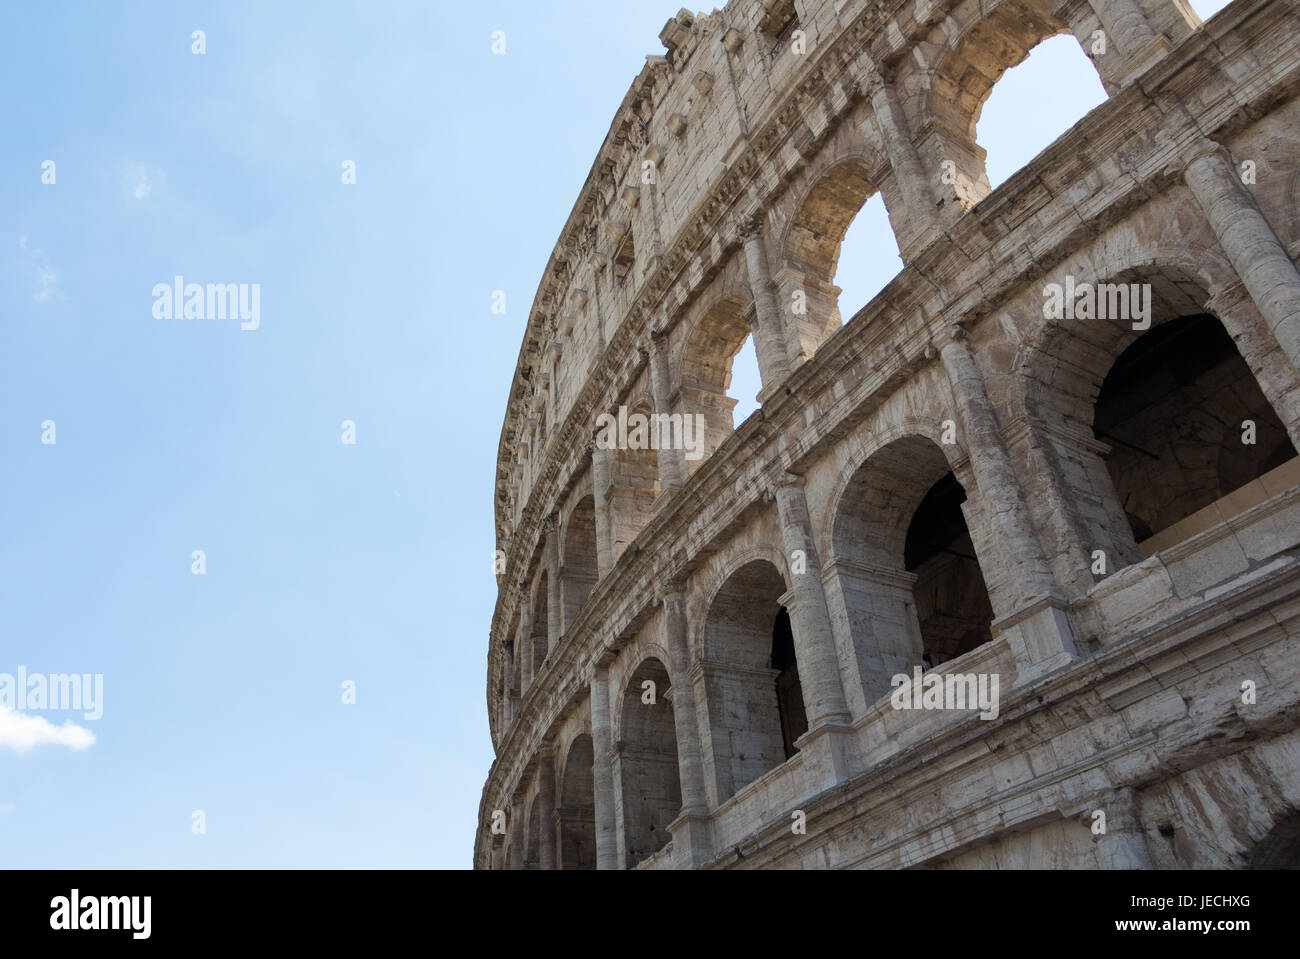 Die prächtige Kolosseum - Rom - Italien Stockfoto